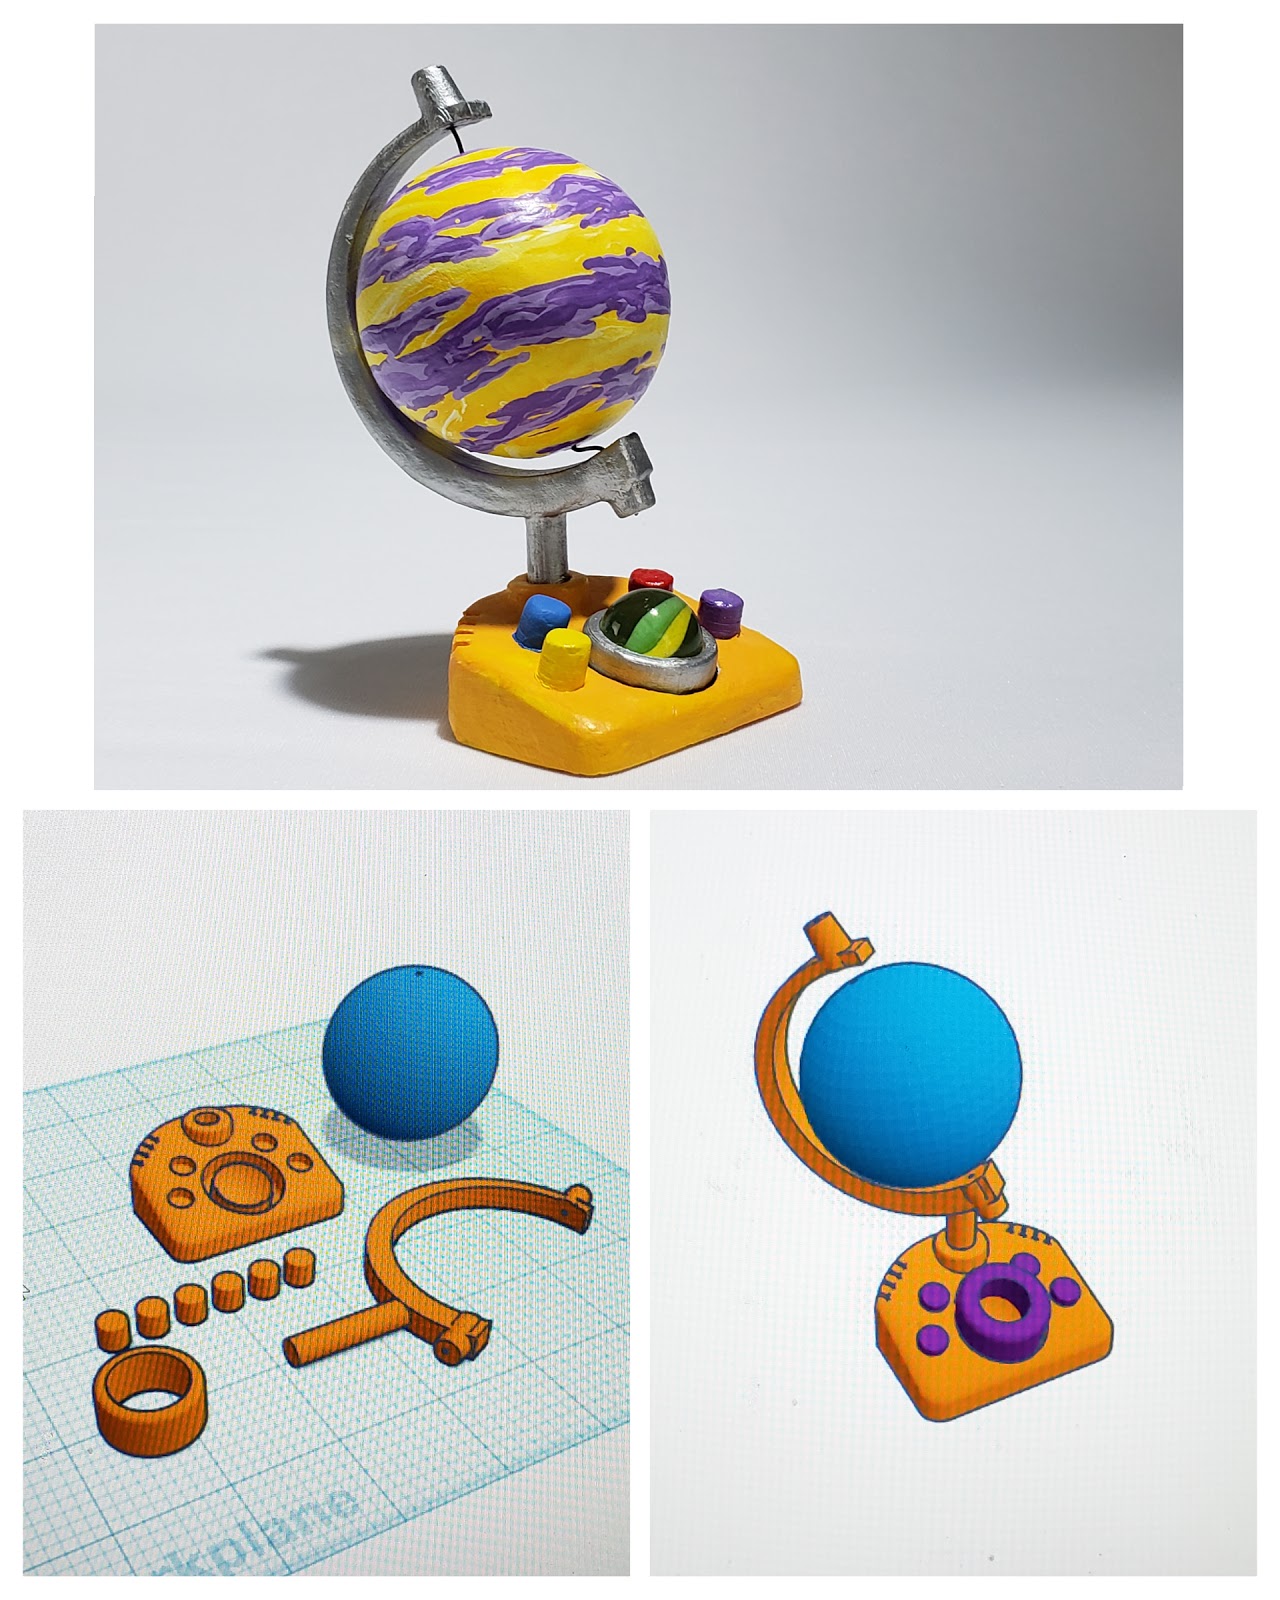 Planet Zug Toy Globe